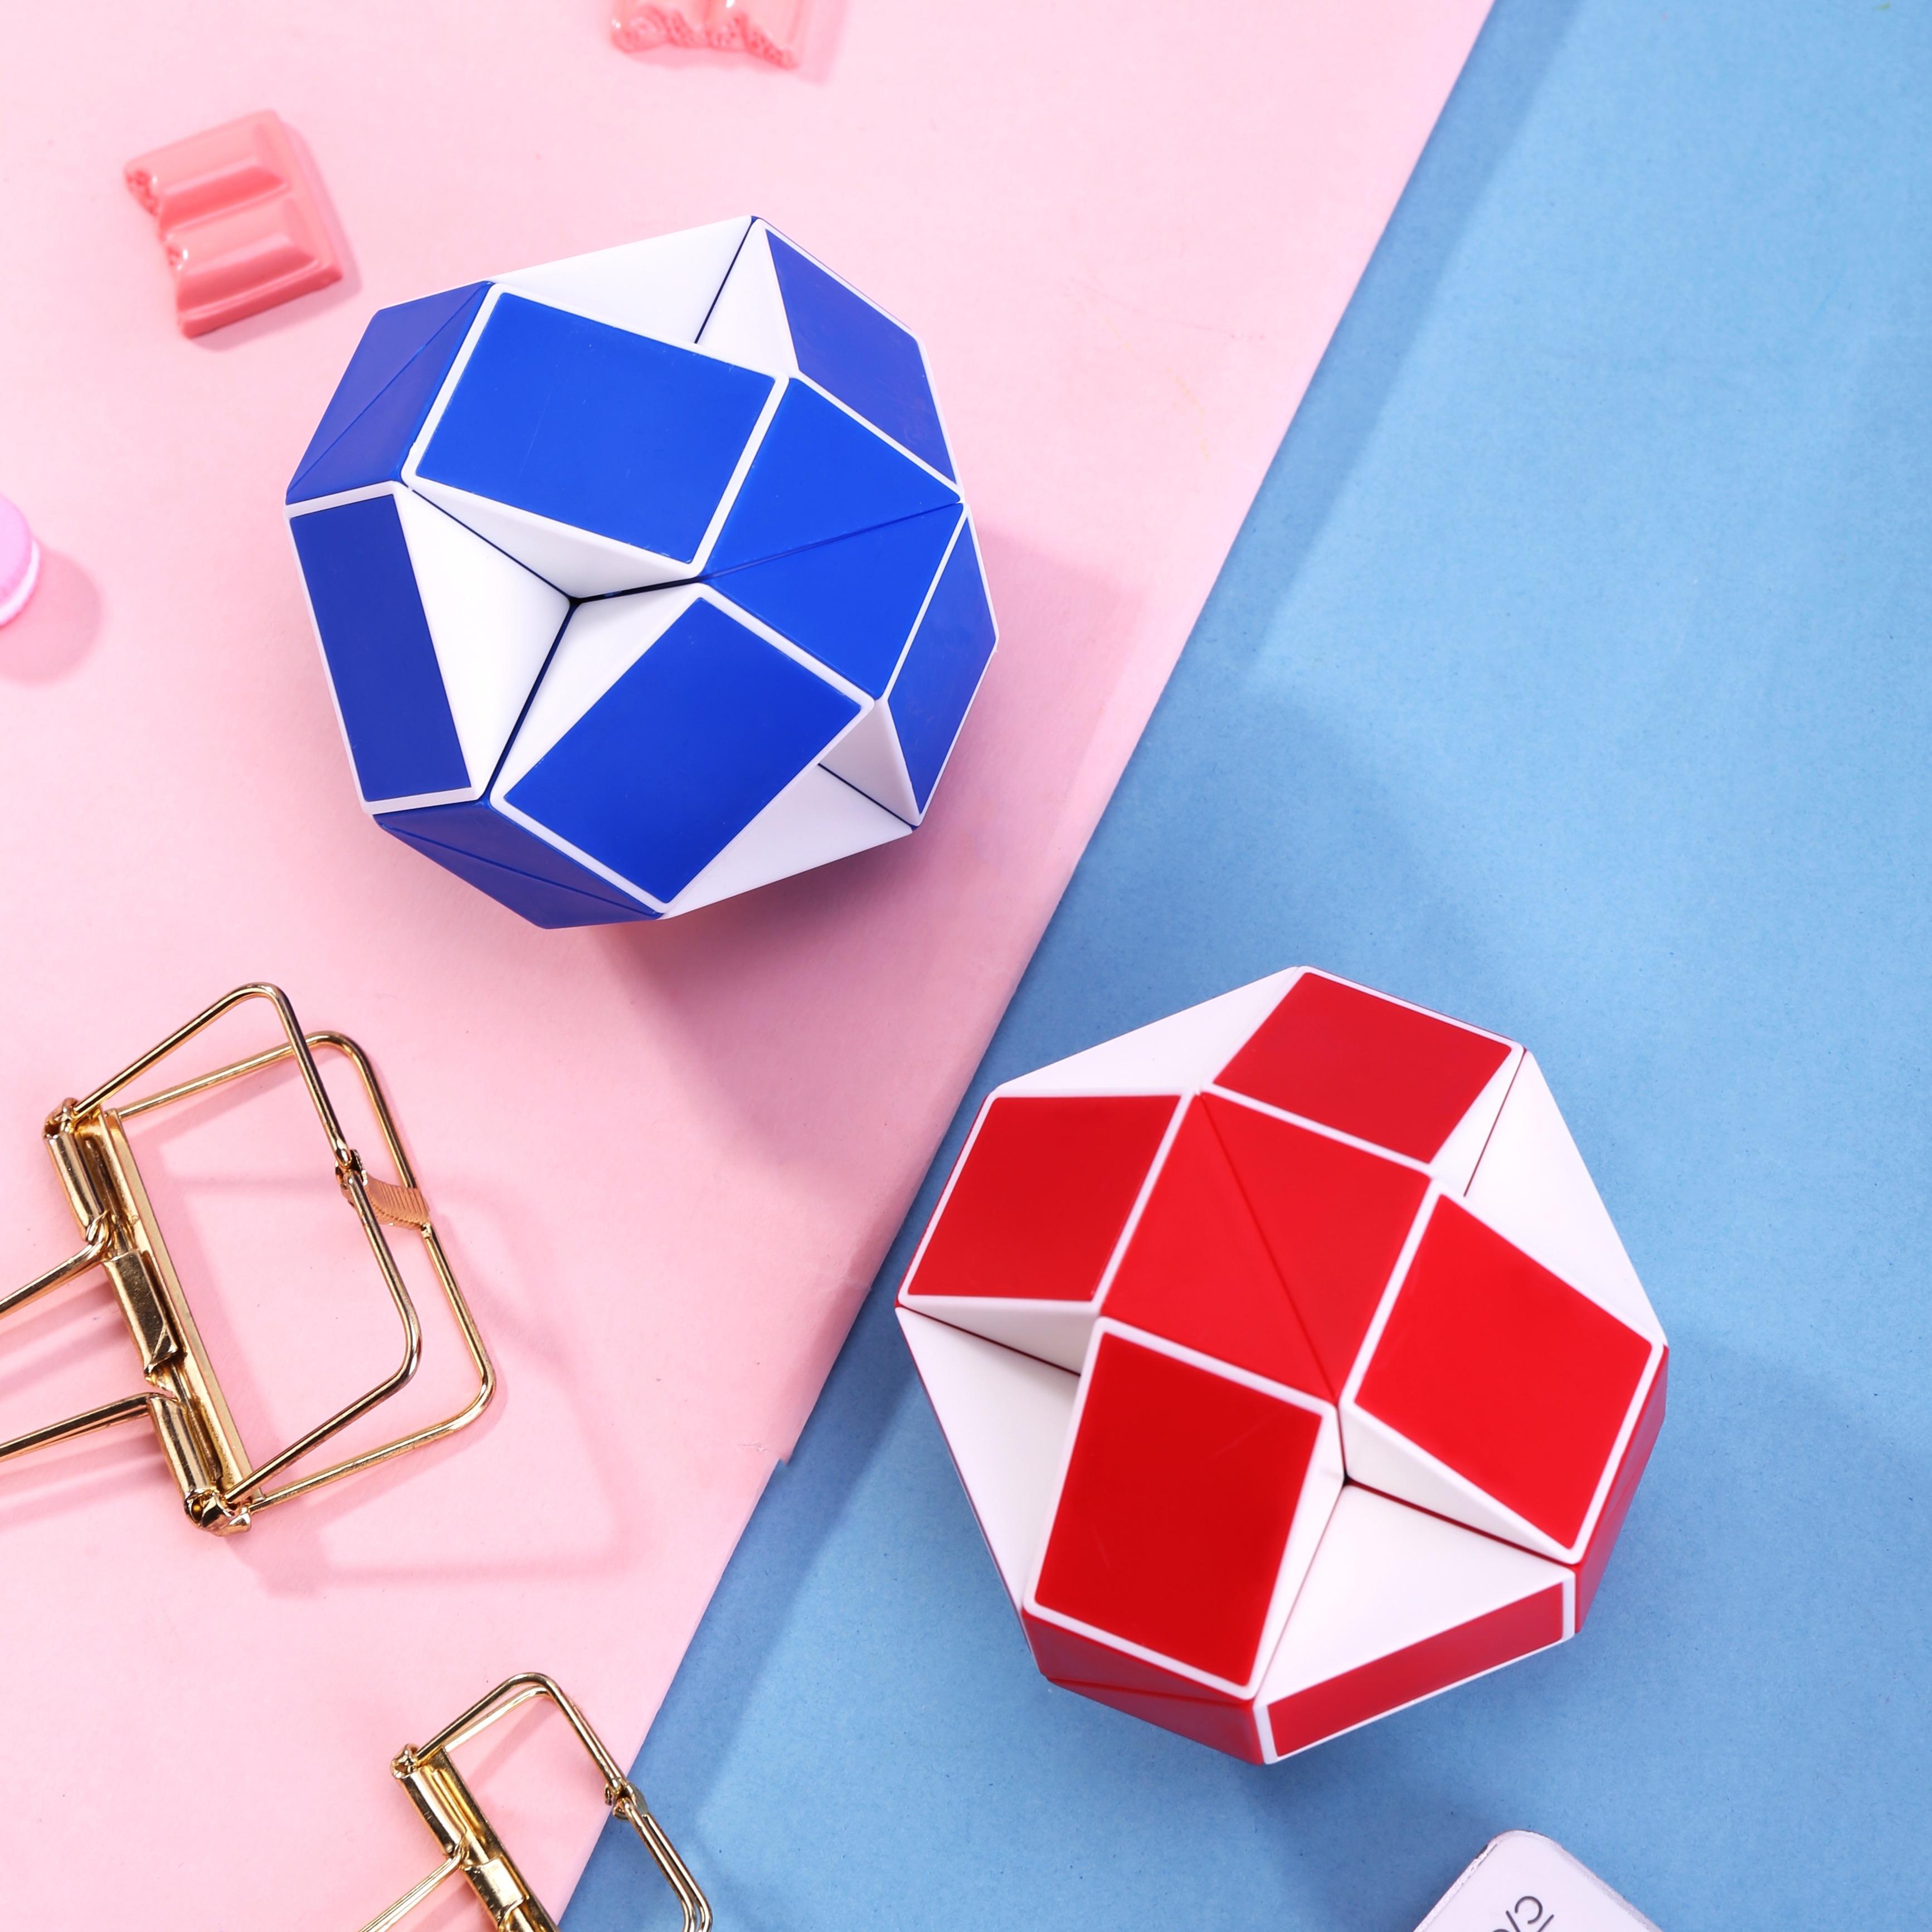 Rubik cube khối rubik 4x4, 2x2, 3x3, tam giác, biến thể Deli - Trò chơi trí tuệ - 74503 / 74507 / 74508 / 74509 / 74512 / 74521 / 74522